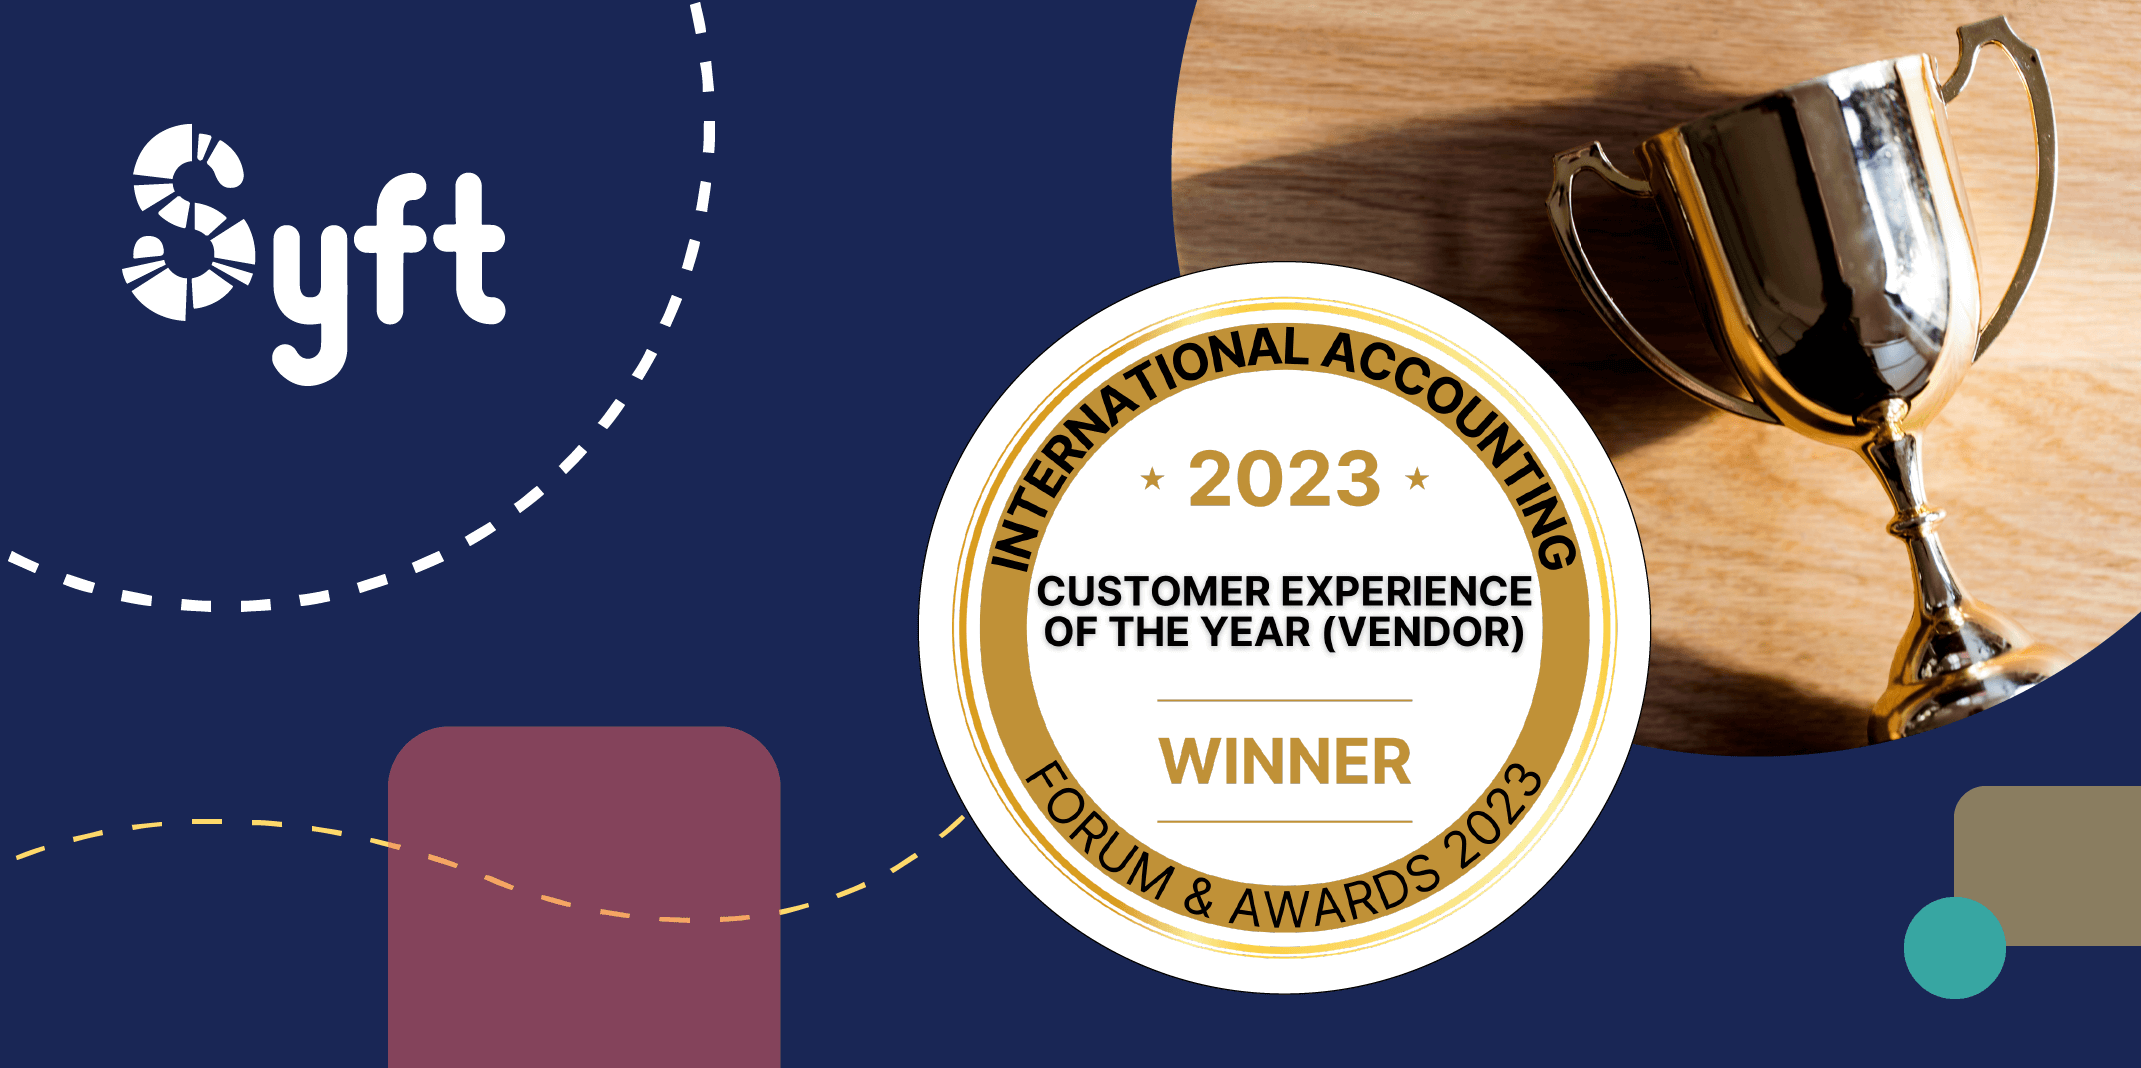 Syft Brings Home the Customer Experience Award at the International Accounting Awards 🏆 logo